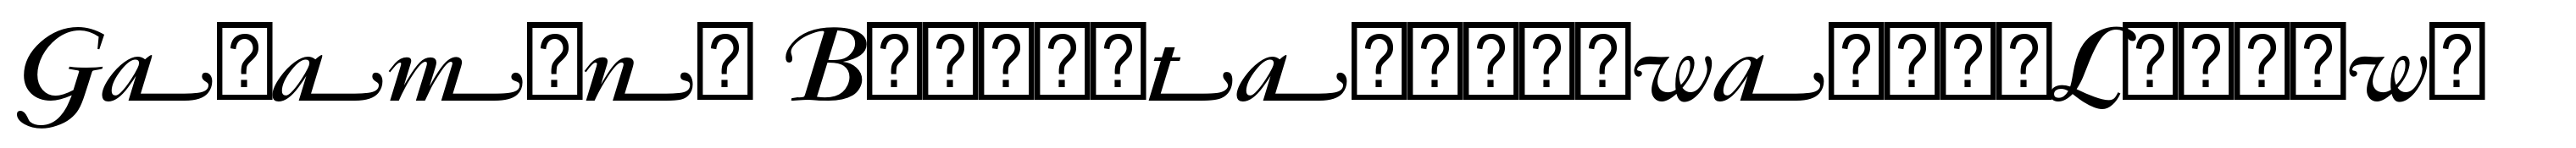 Garamond Bold Italic Swash (Ludlow)